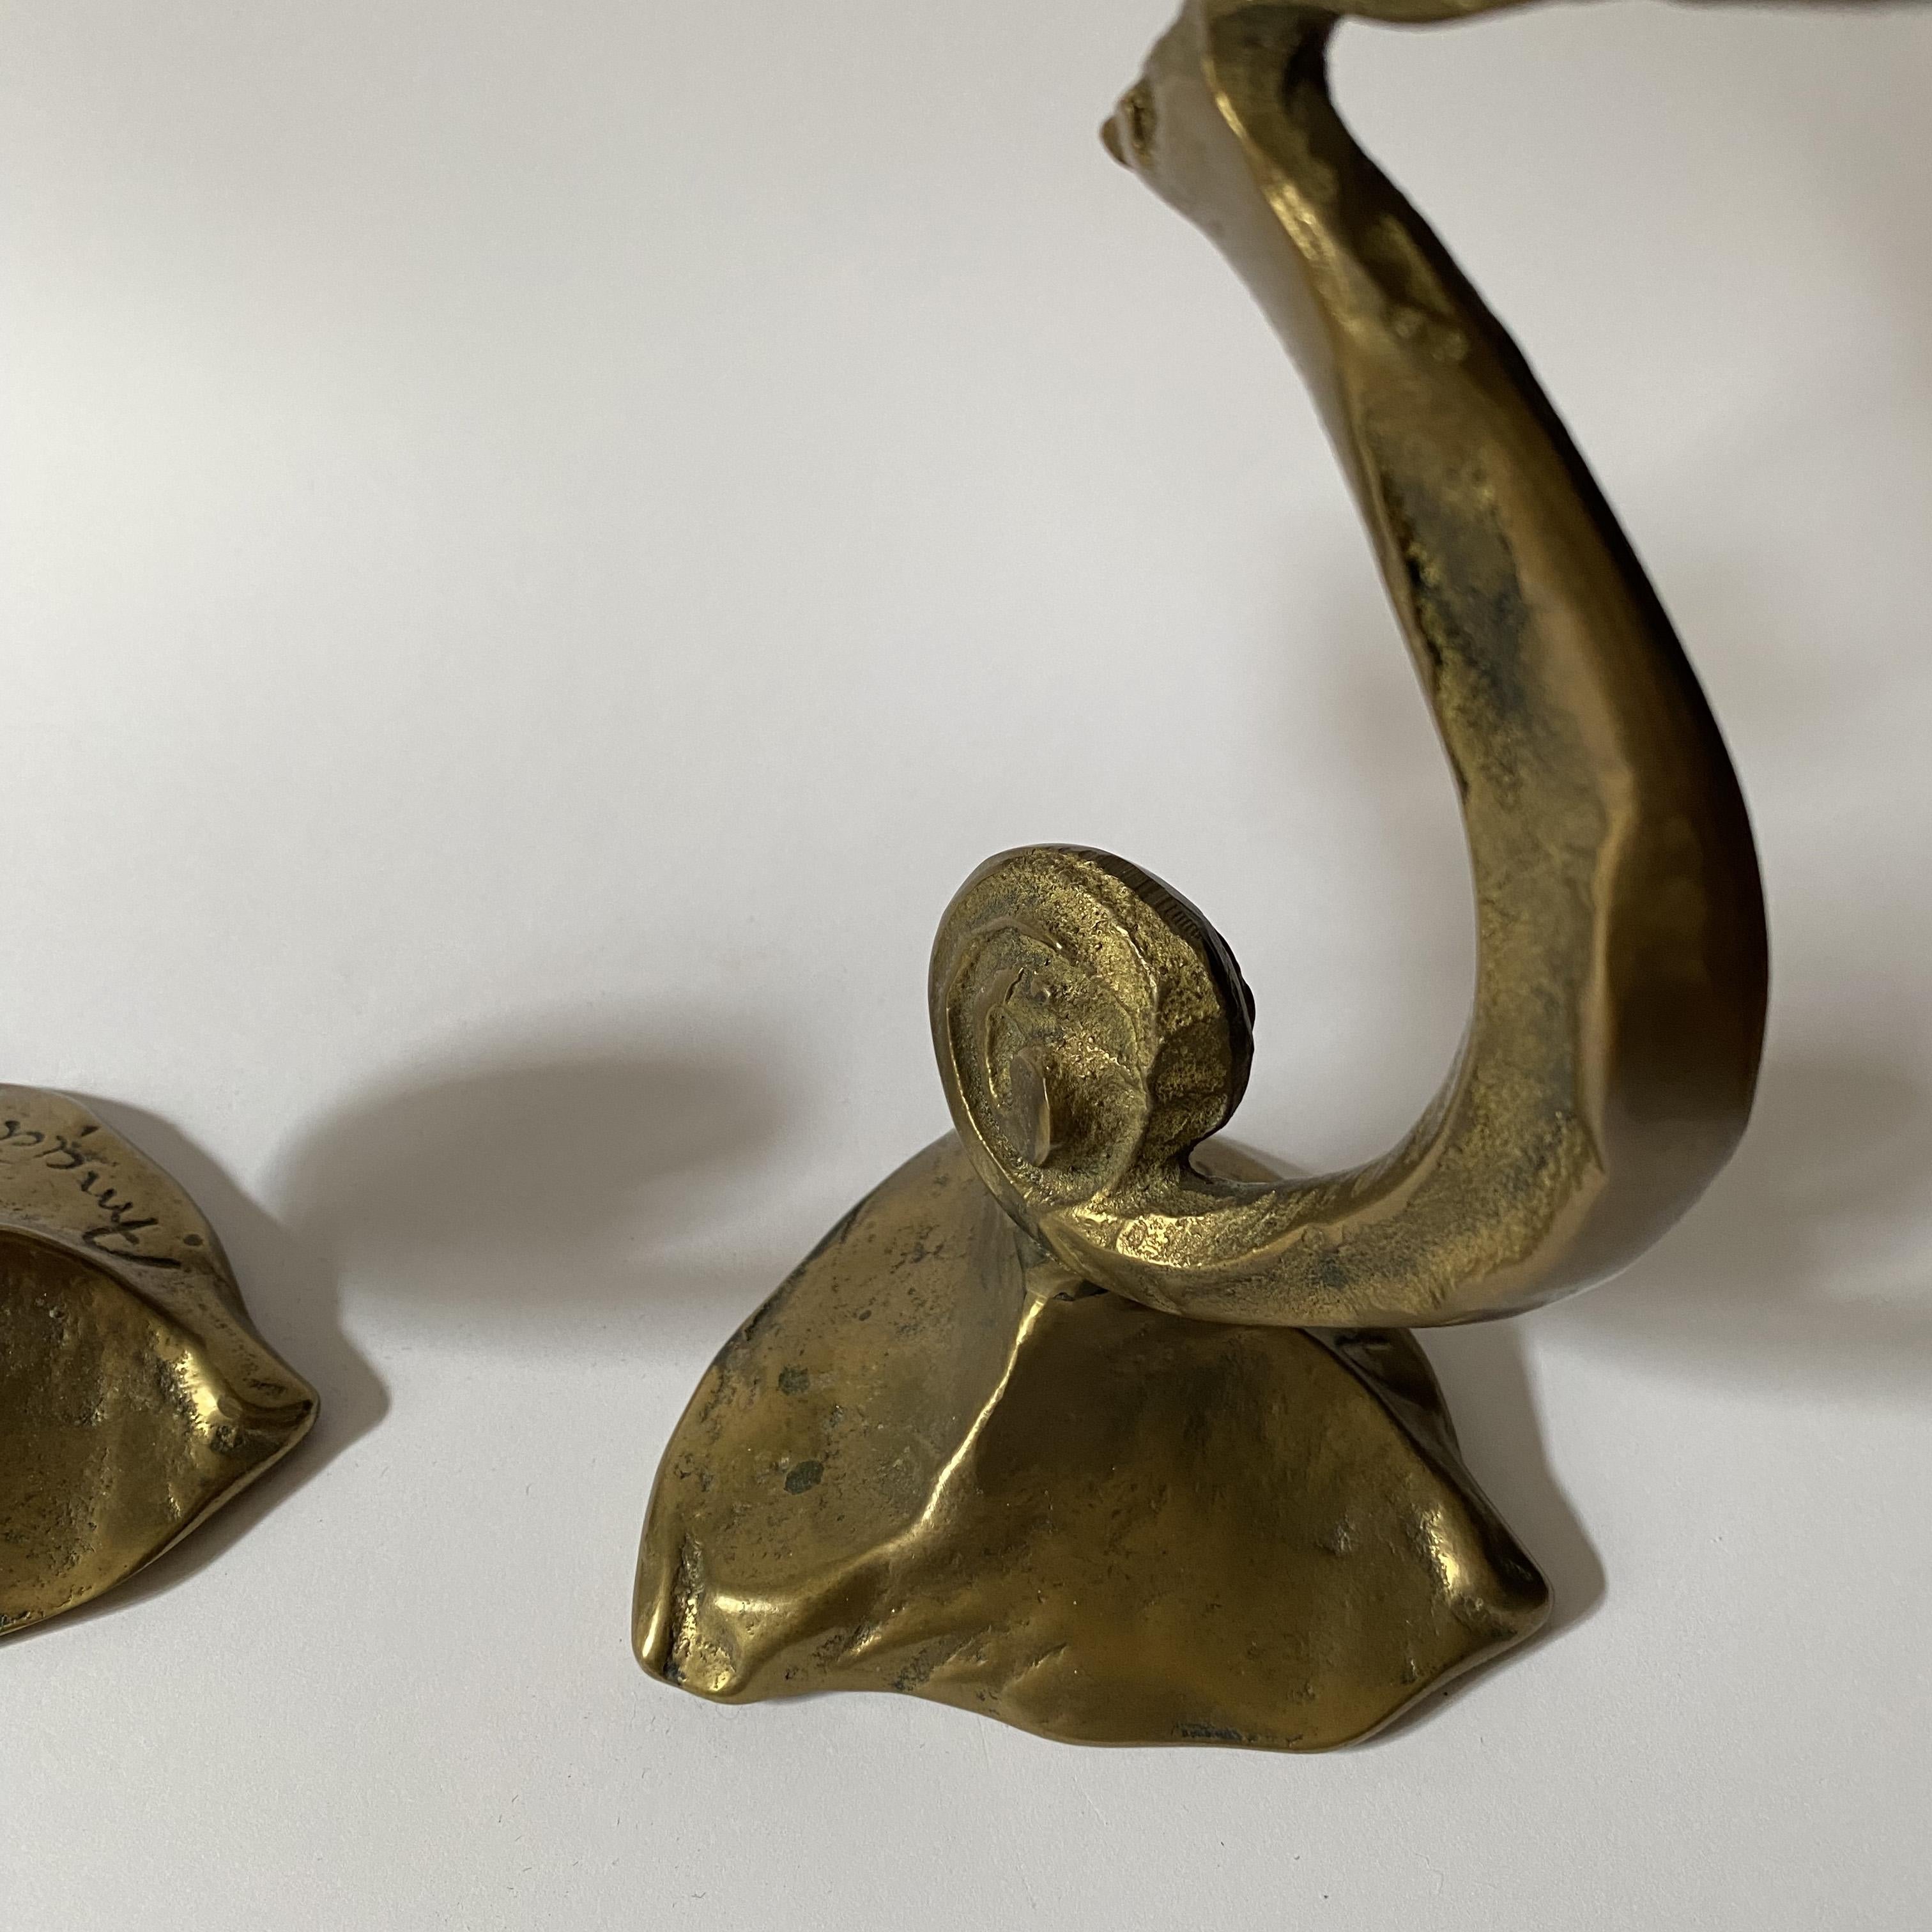 Brass Sculptural Candlesticks by Kurt Jesch for Amadeo 'No Fondica', Austria, 1960s.